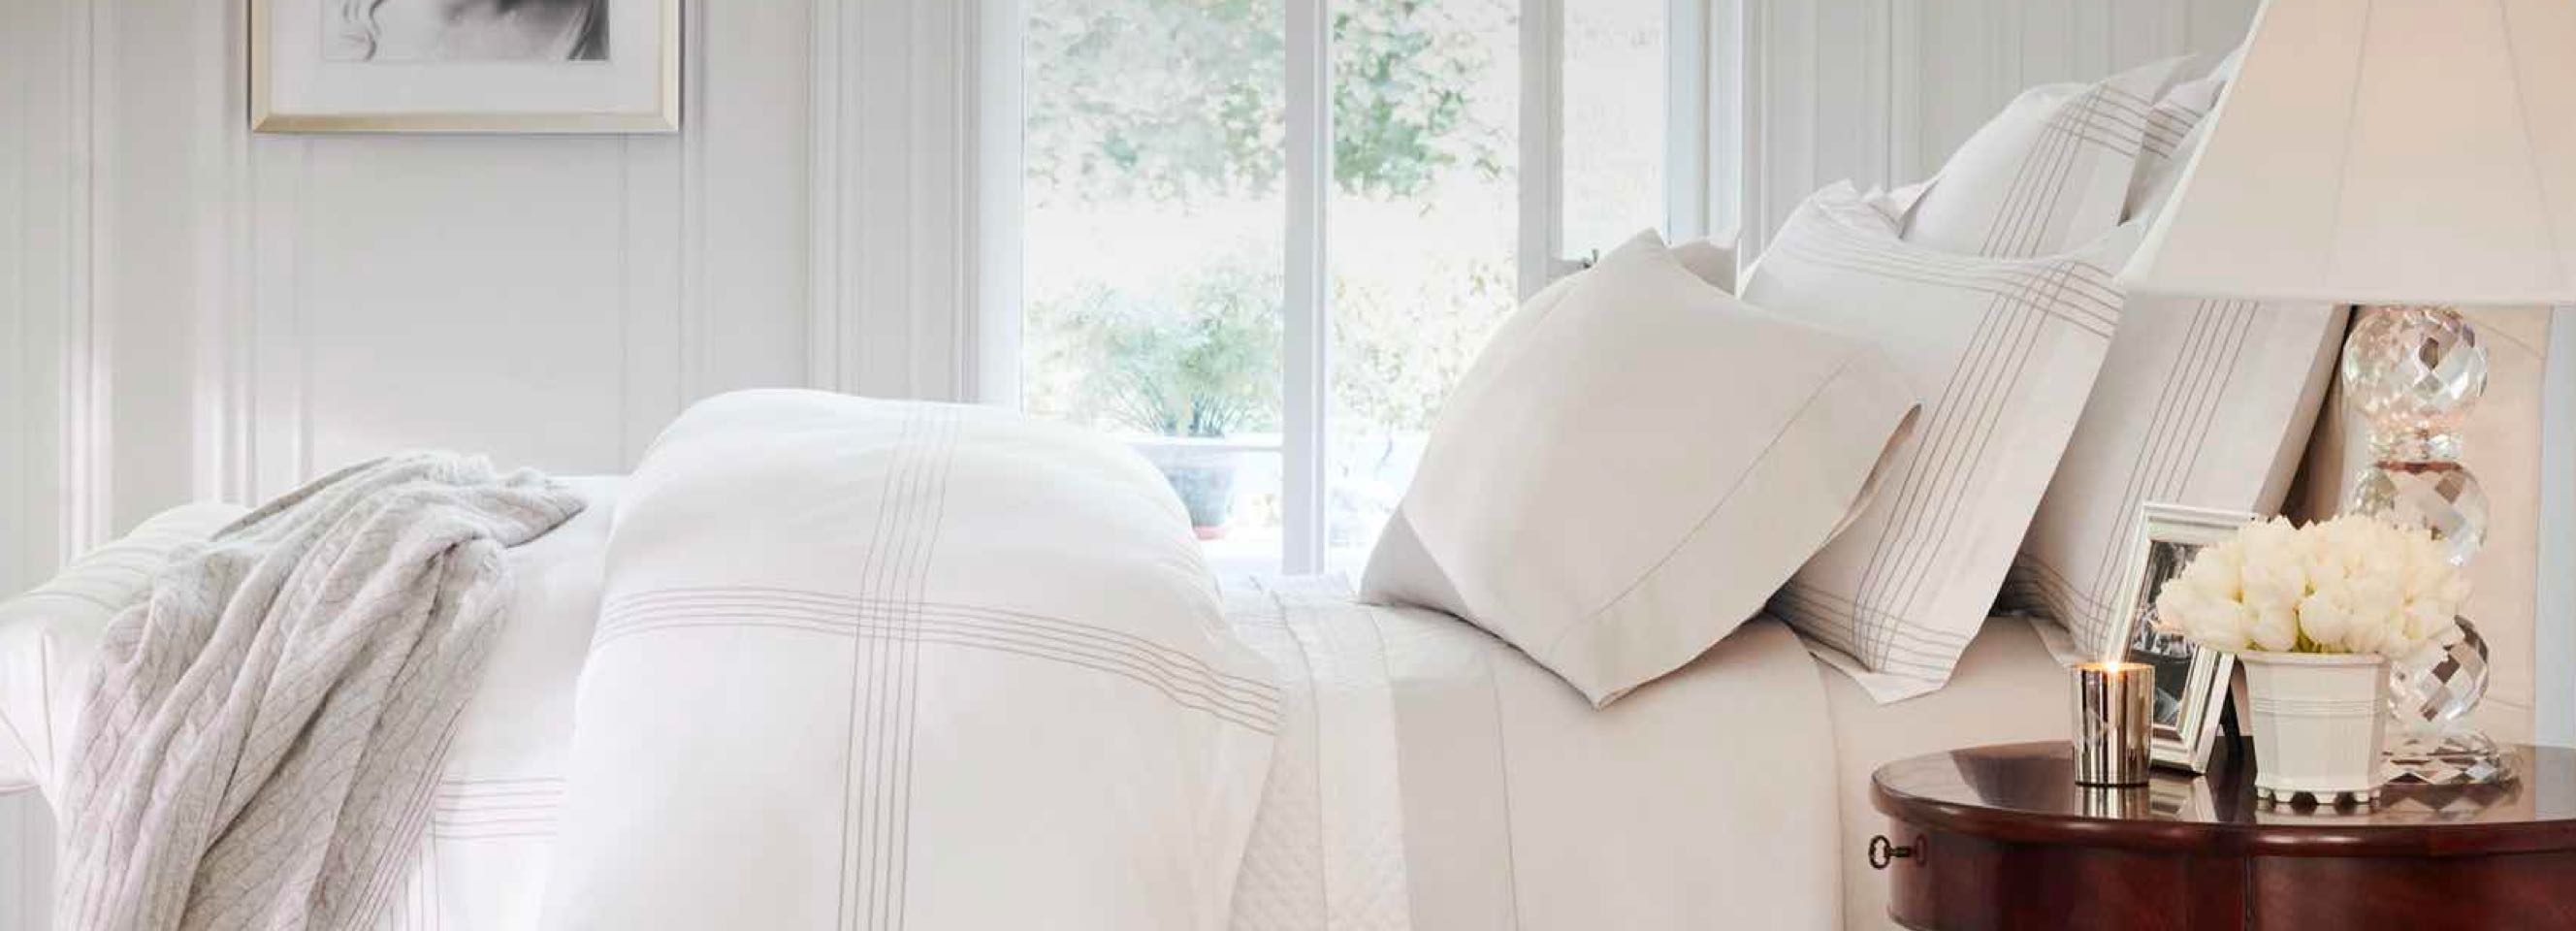 Fortaleza Manía oro Ropa de cama de Ralph Lauren - Fundas de edredón, mantas, sábanas y más